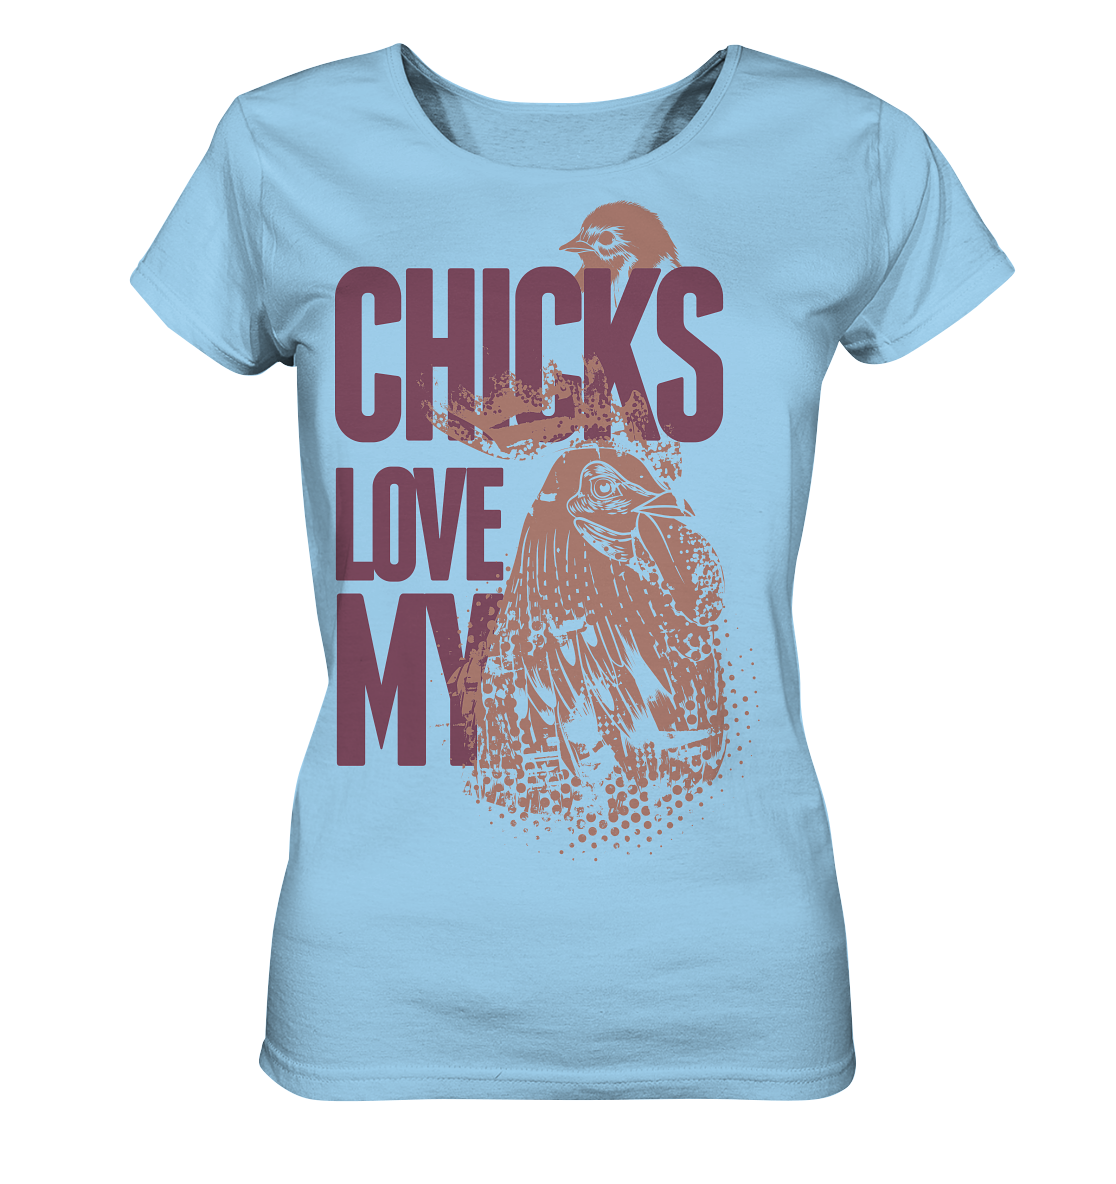 CHICKS LOVE MY - Ladies Organic Shirt